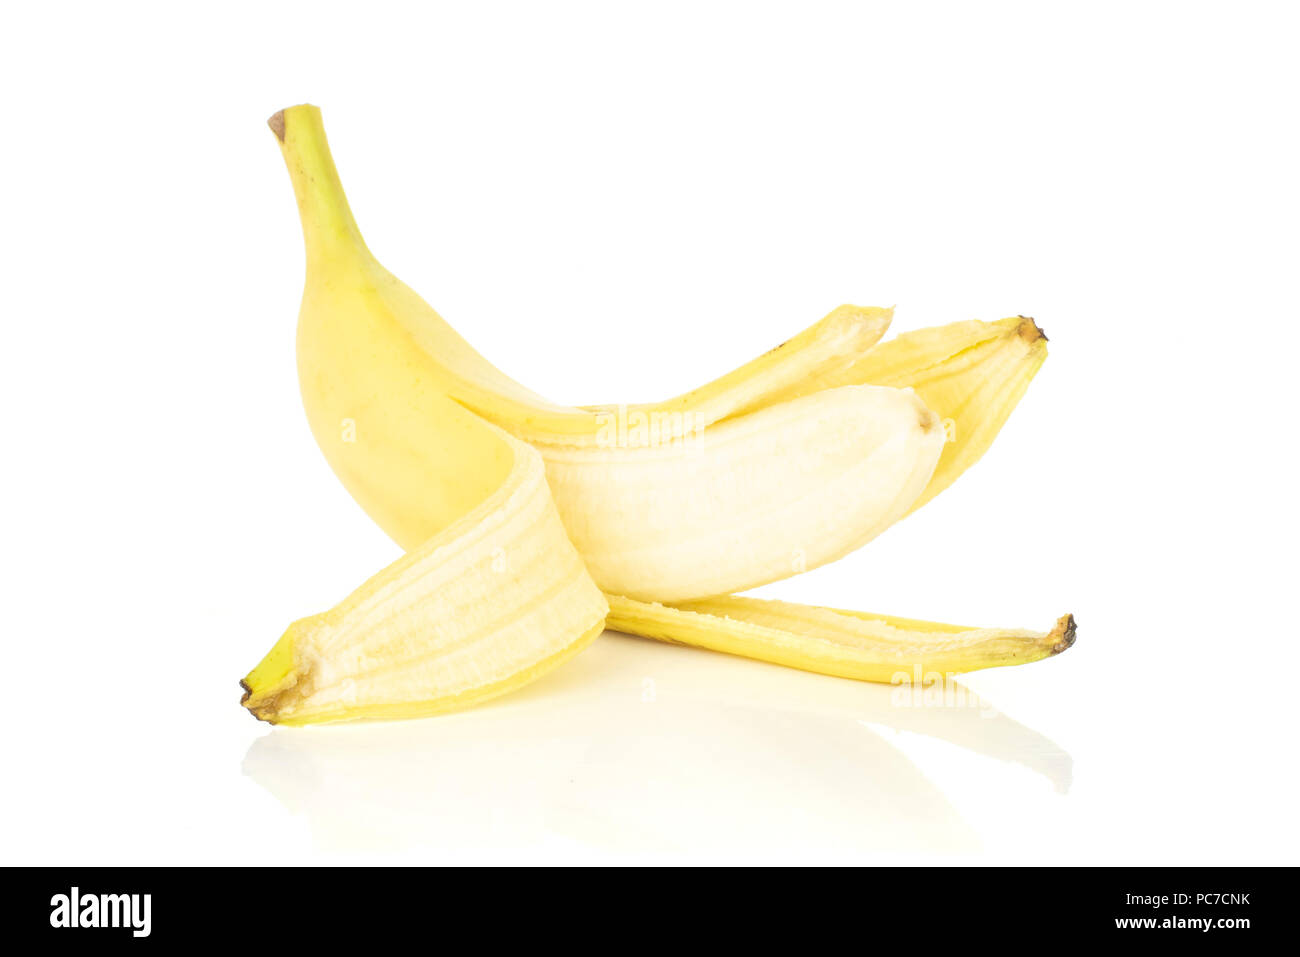 One whole opened fresh yellow banana isolated on white background Stock Photo